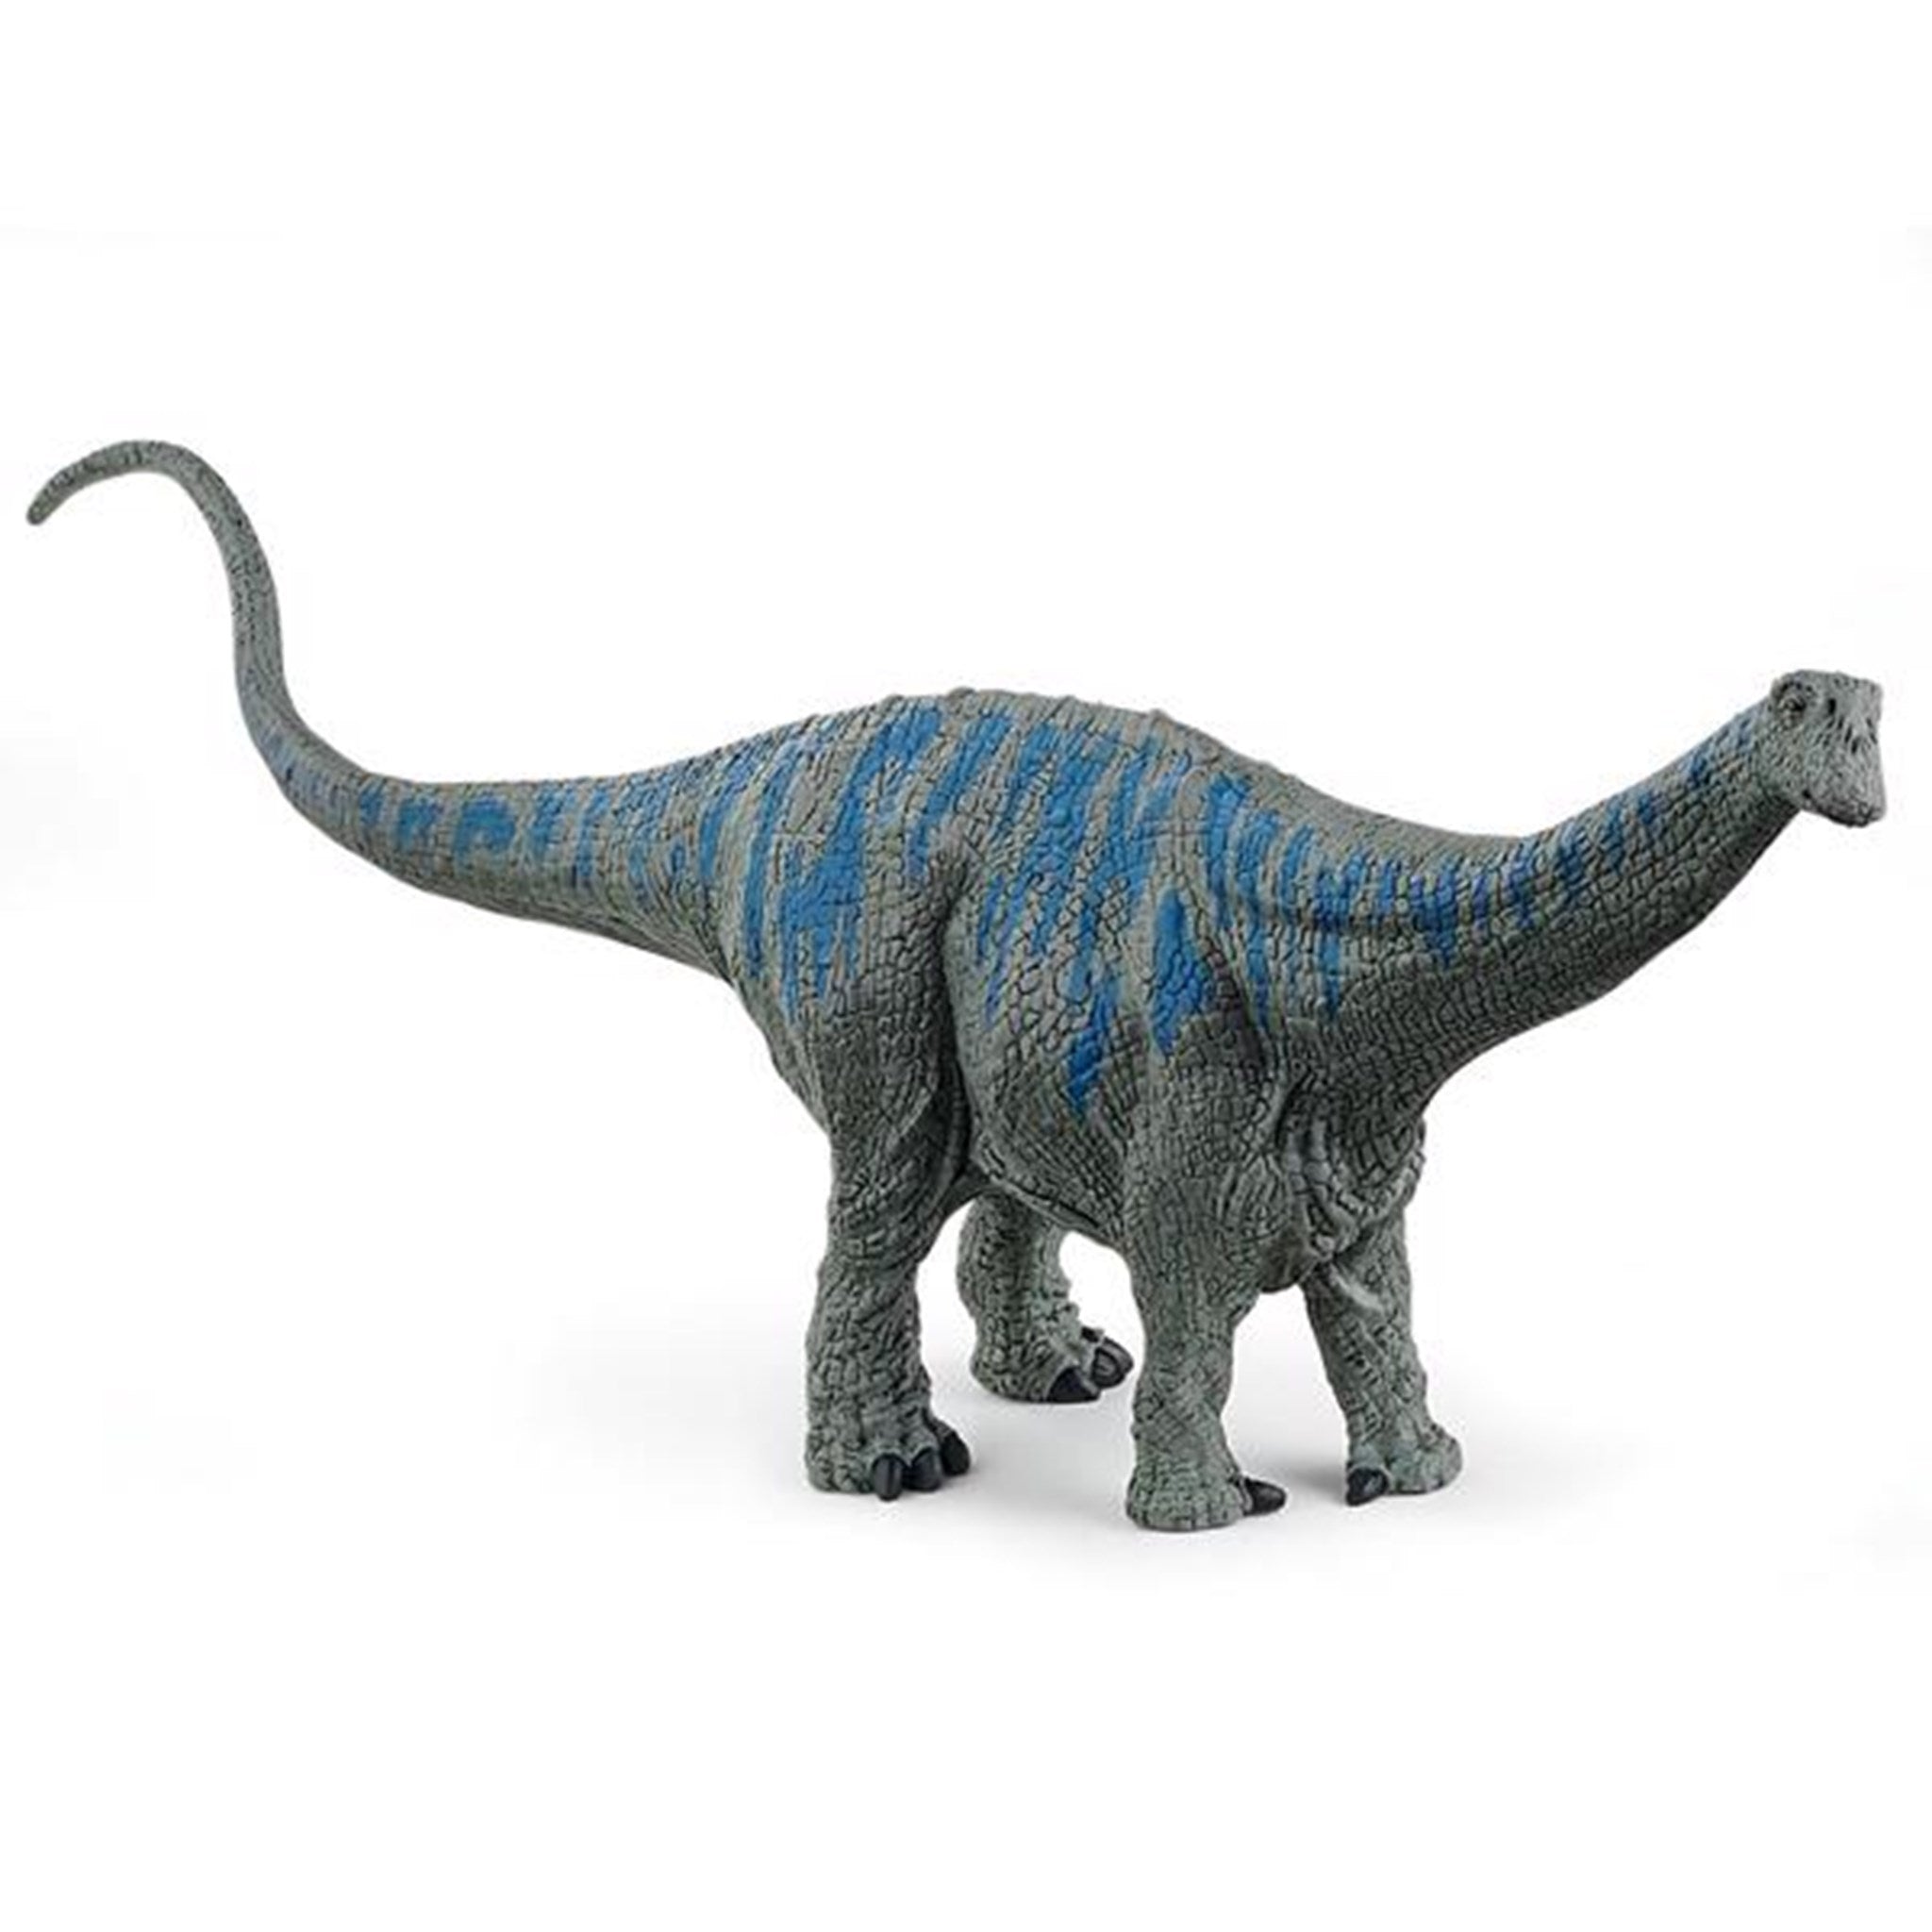 Schleich Dinosaurs Brontosaurus